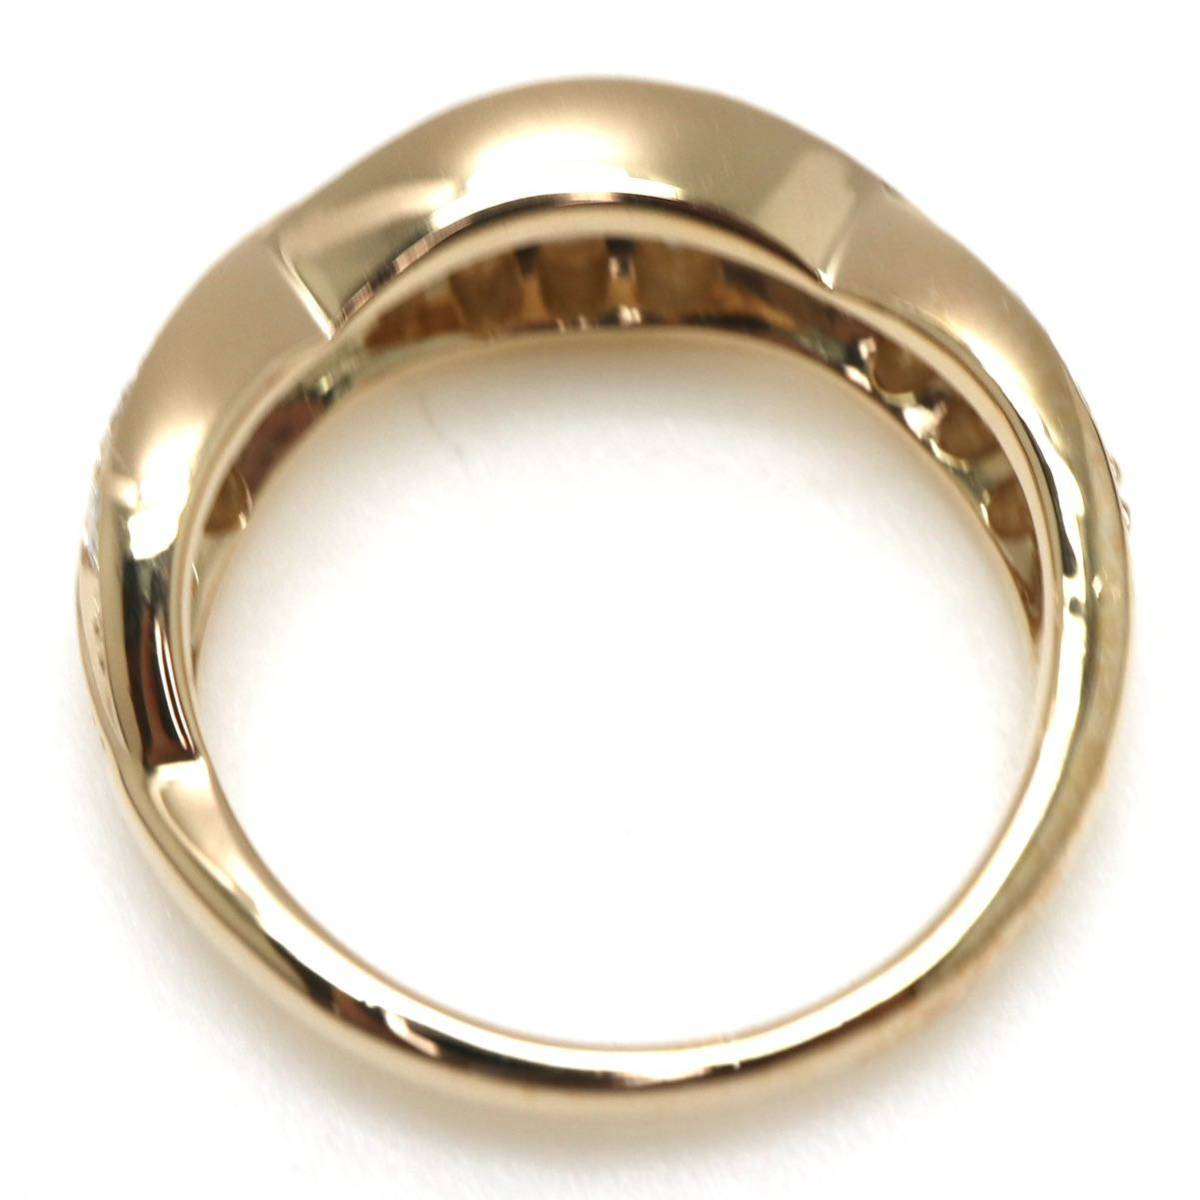 新品仕上げ済み!!◆K18 天然ダイヤモンドリング◆M 4.8g 8号 0.80ct diamond ring 指輪 jewelry pave EC9_画像6